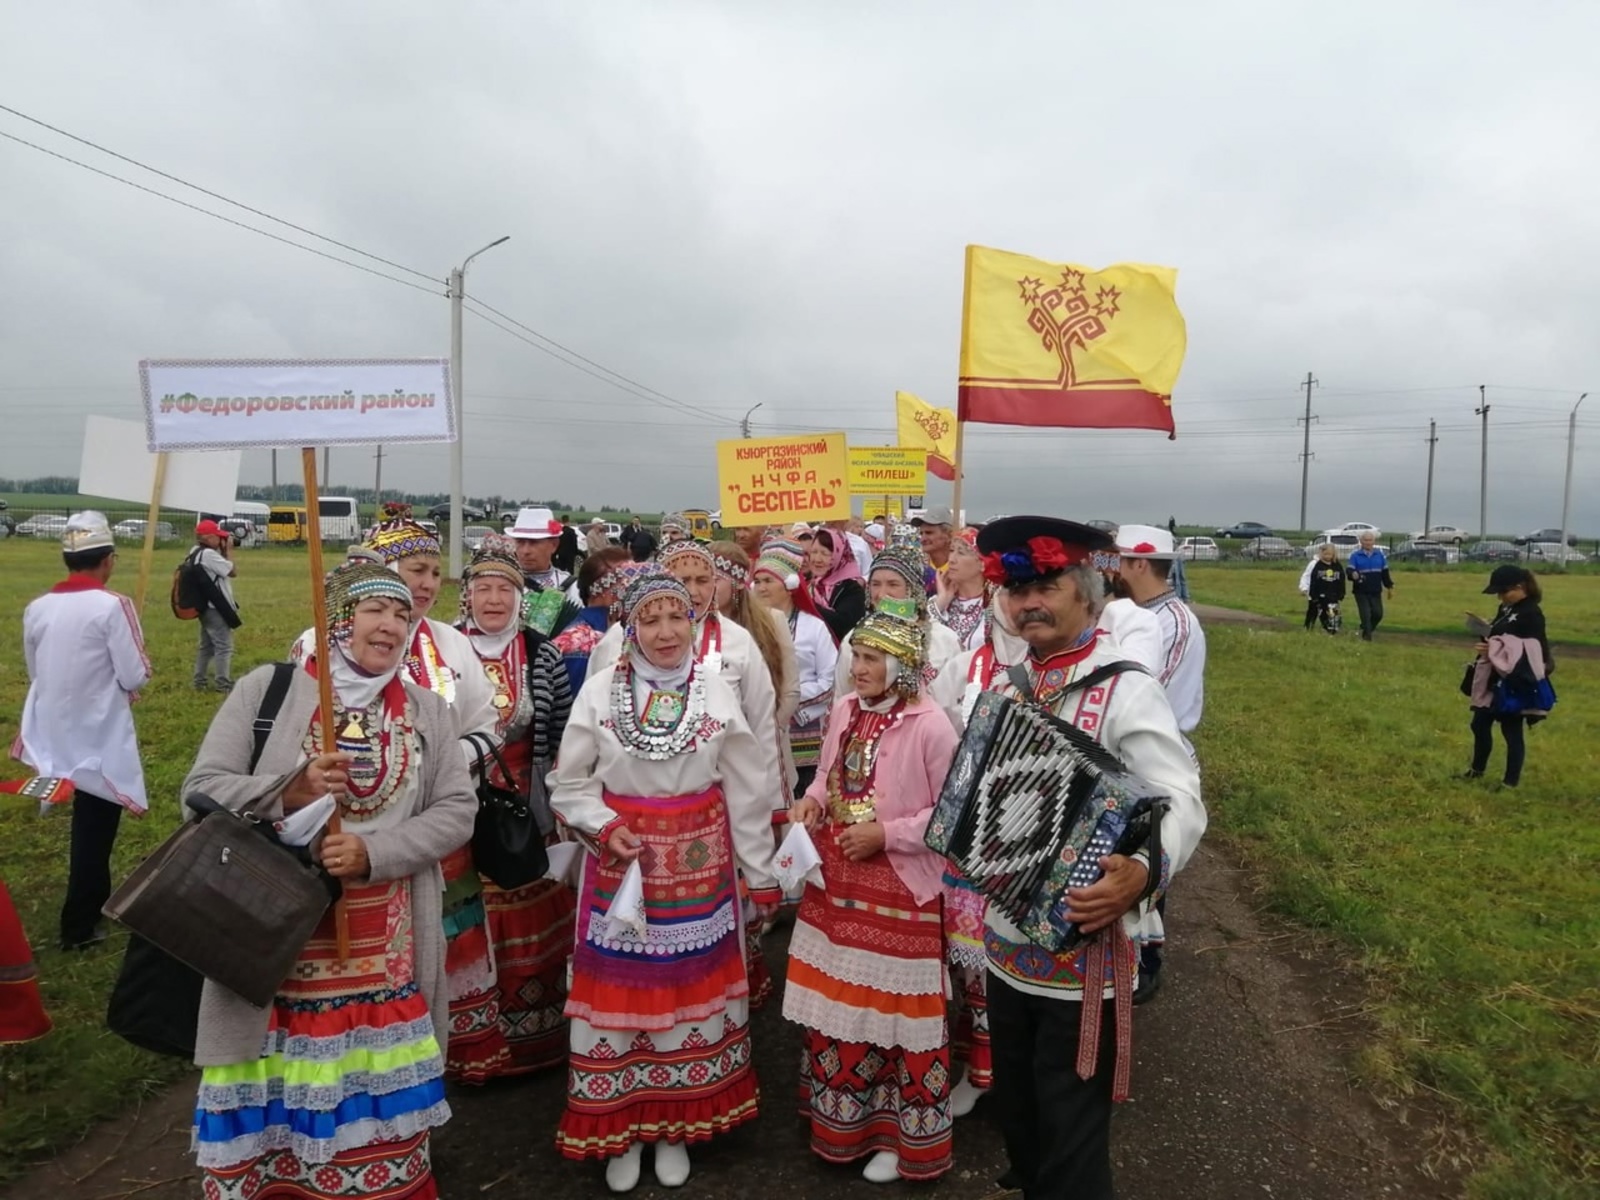 Кирюшкинцы завоевали первое место на Межрегиональном фестивале чувашской культуры «Уяв»!